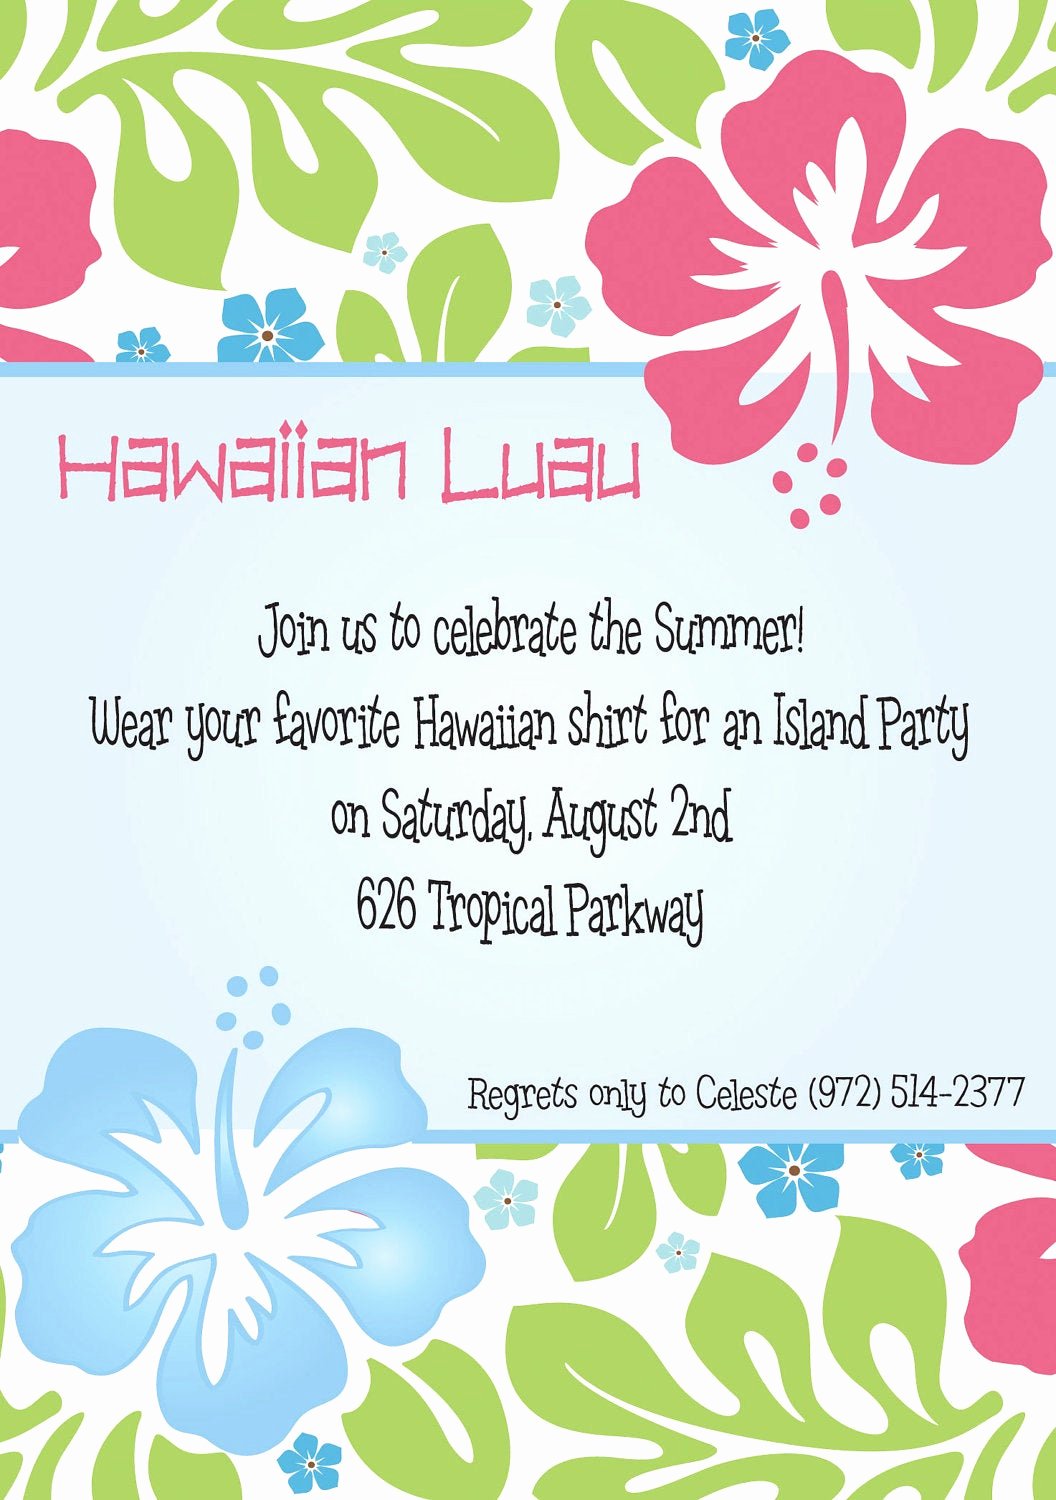 Hawaiian themed Invitation Templates Free Awesome Hawaiian Luau Party Invitation